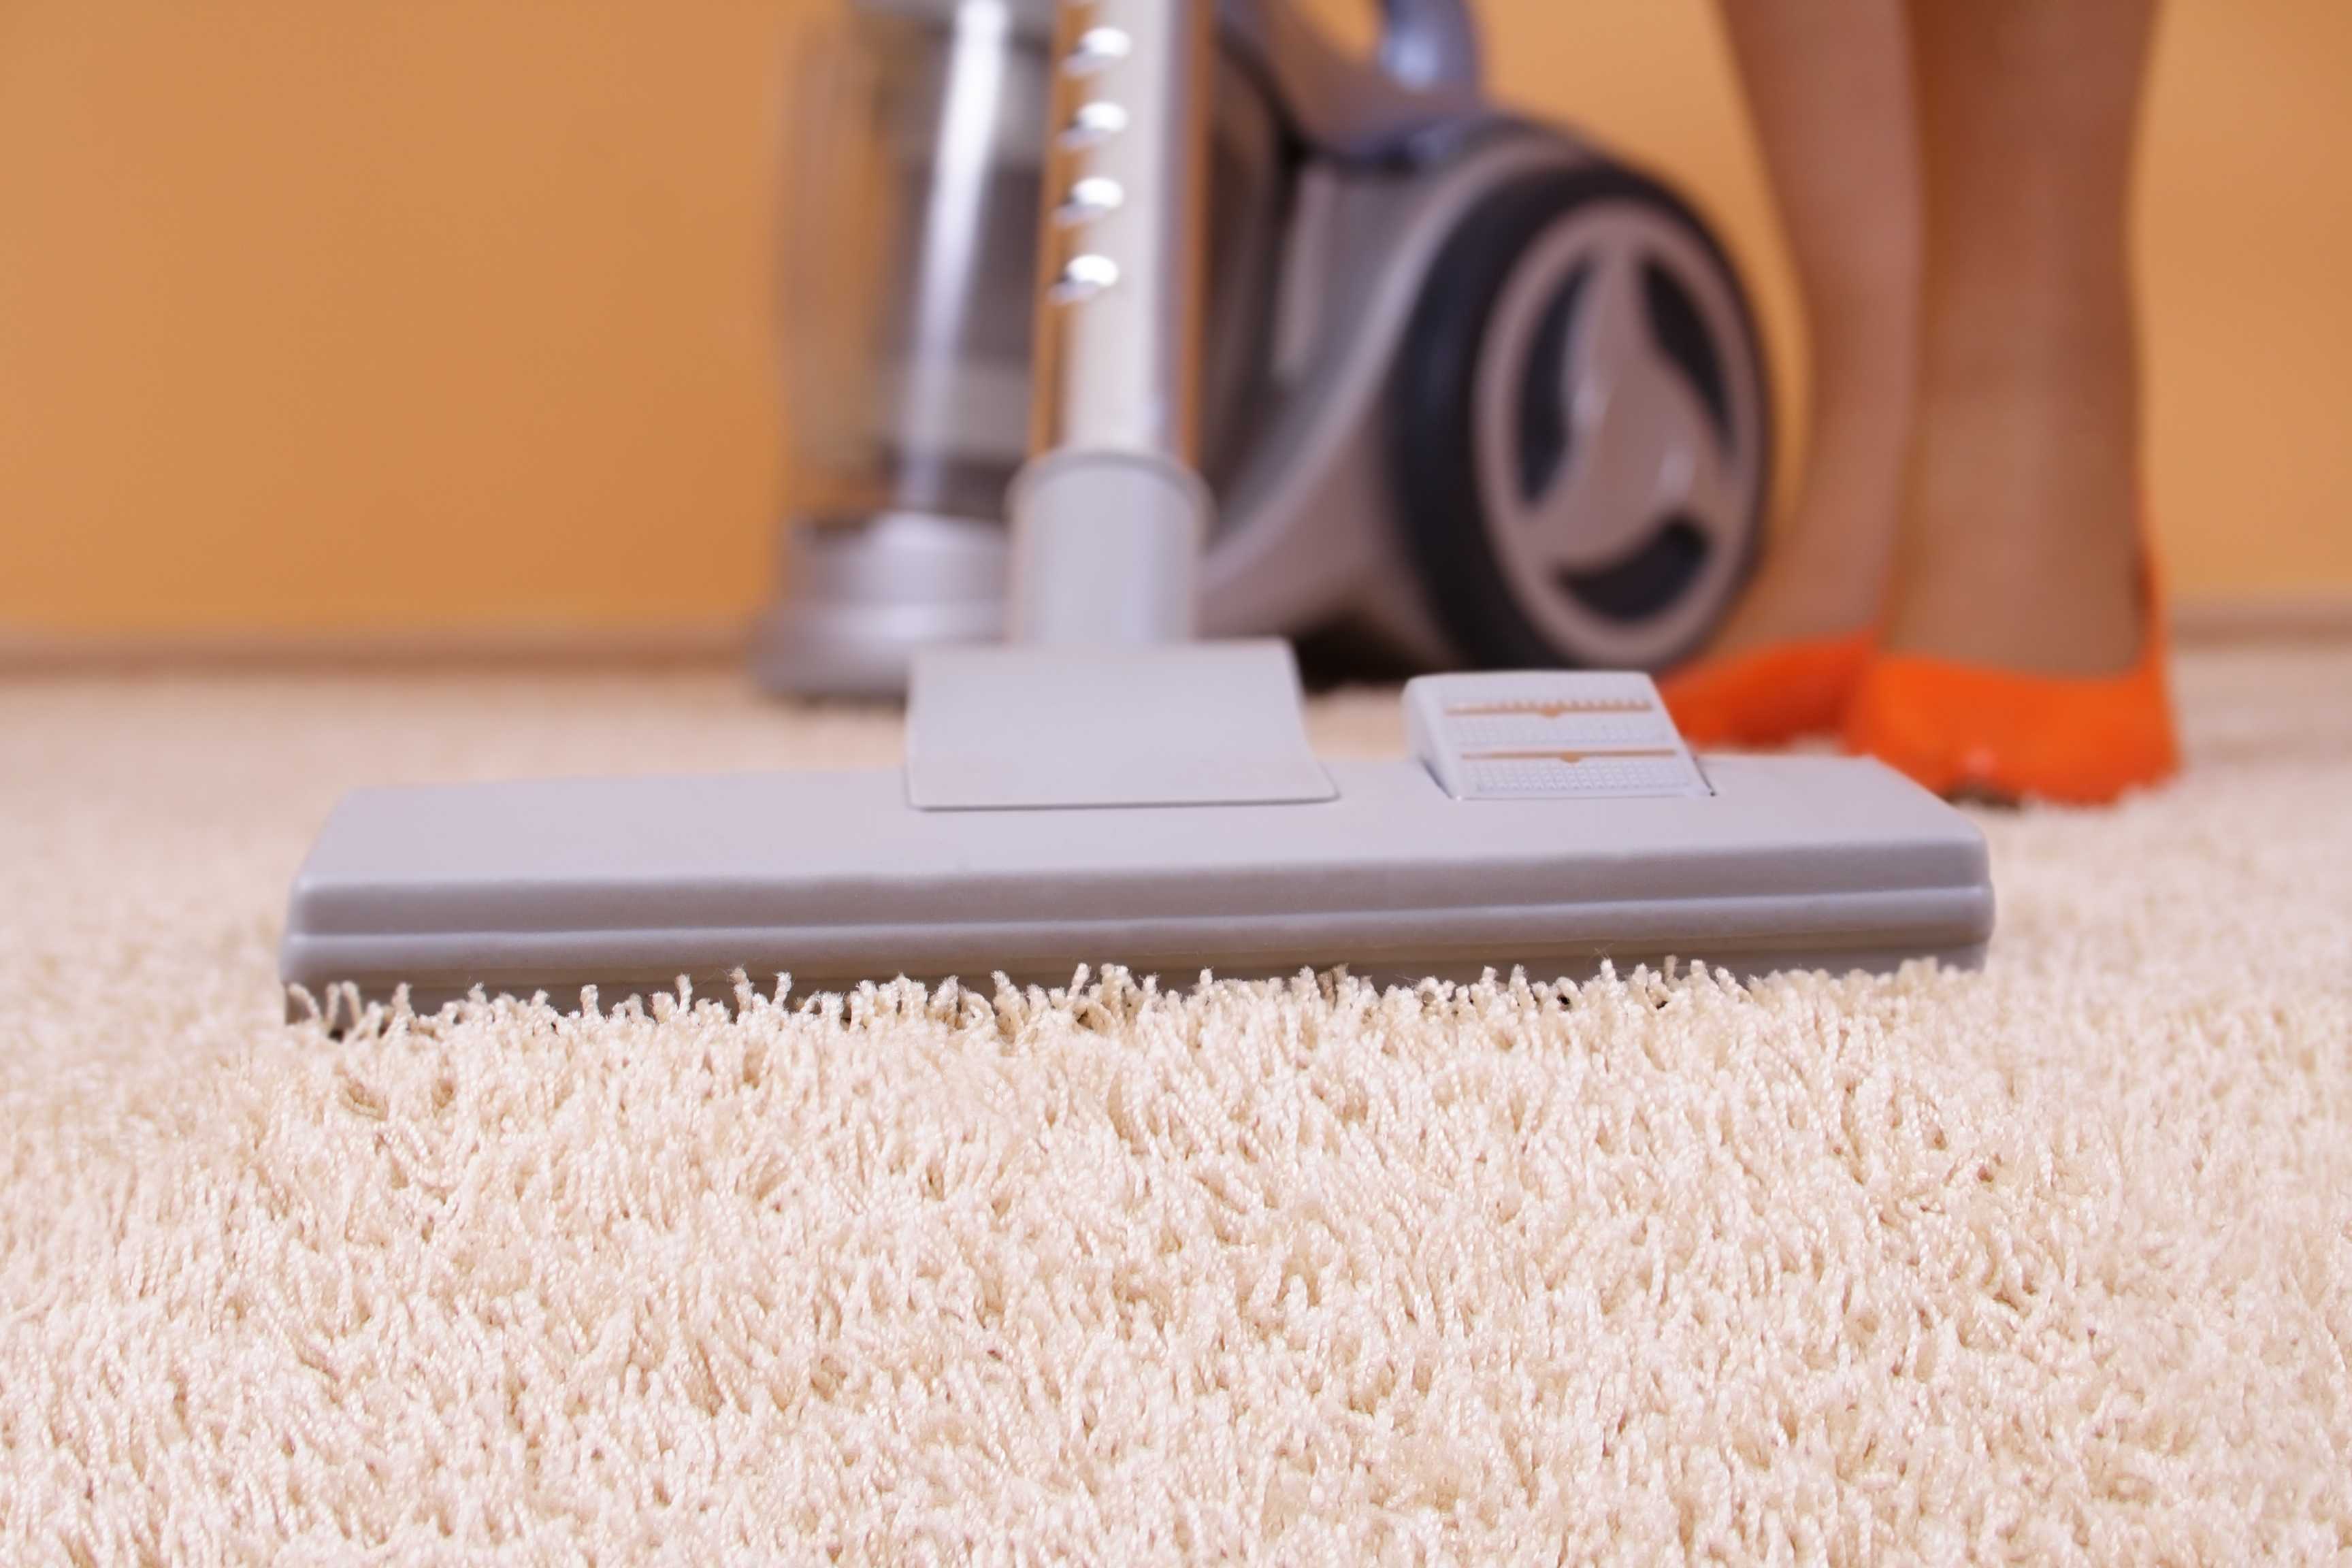 Чистка ковровых покрытий в домашних условиях: обзор средств